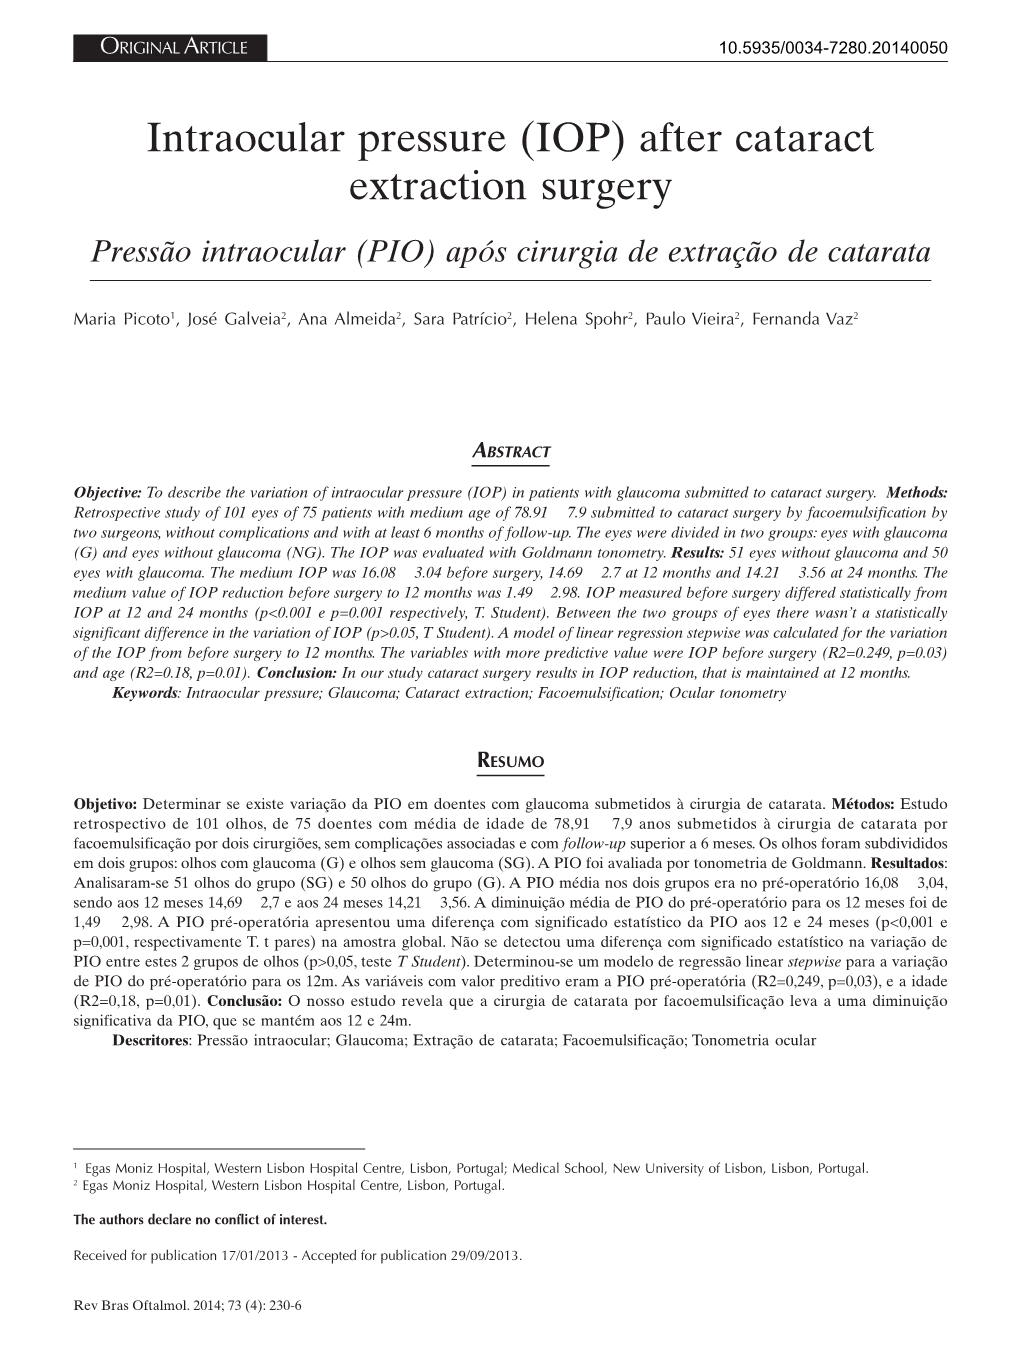 Intraocular Pressure (IOP) After Cataract Extraction Surgery Pressão Intraocular (PIO) Após Cirurgia De Extração De Catarata